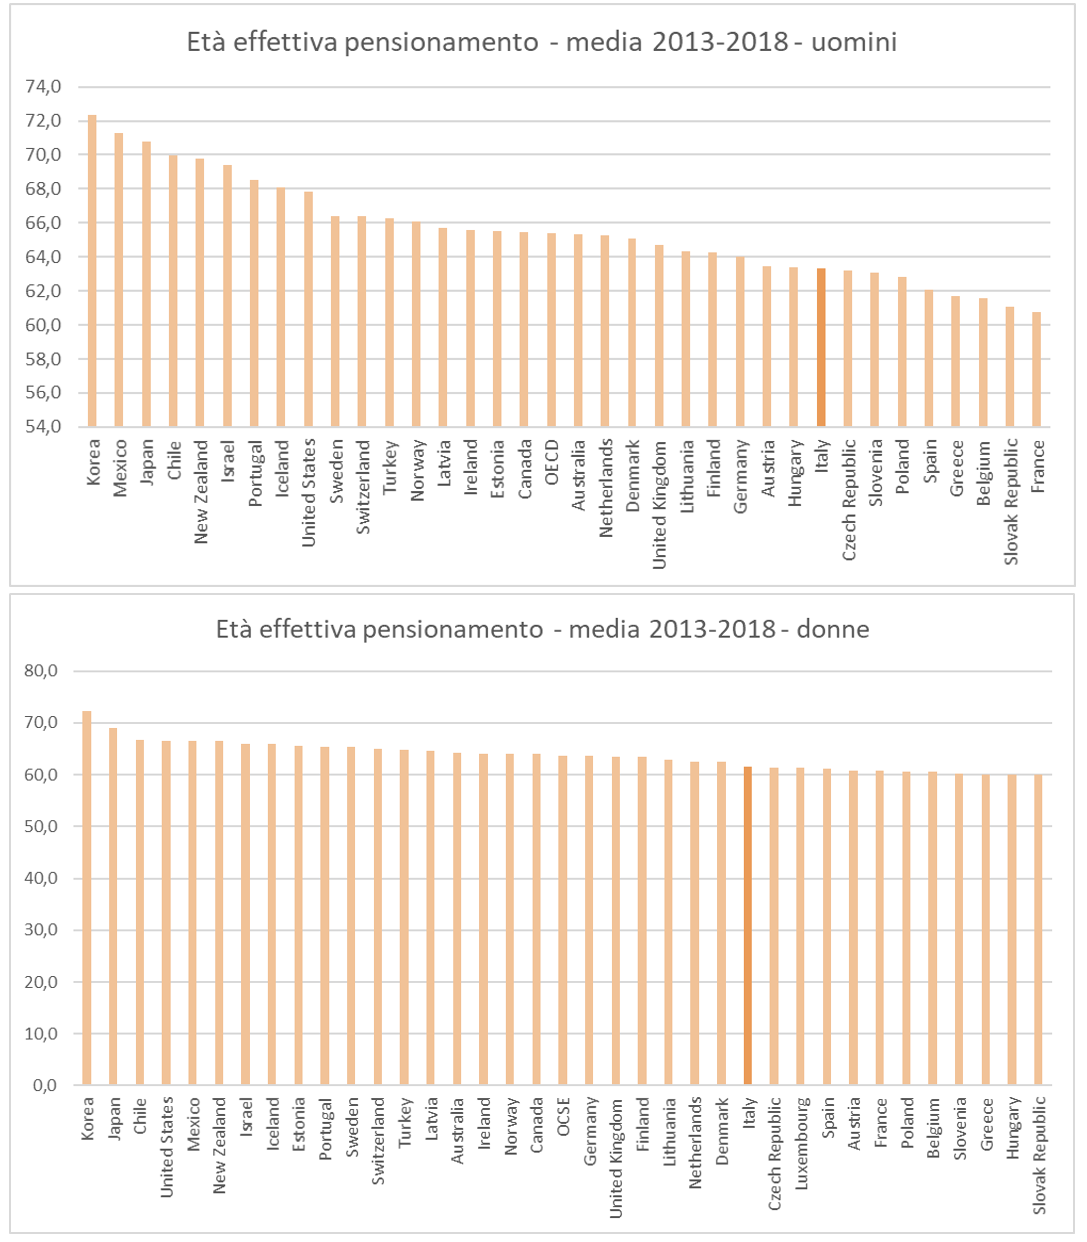 Figura 1 - L'et  effettiva di pensionamento nei Paesi dell'area OCSE 